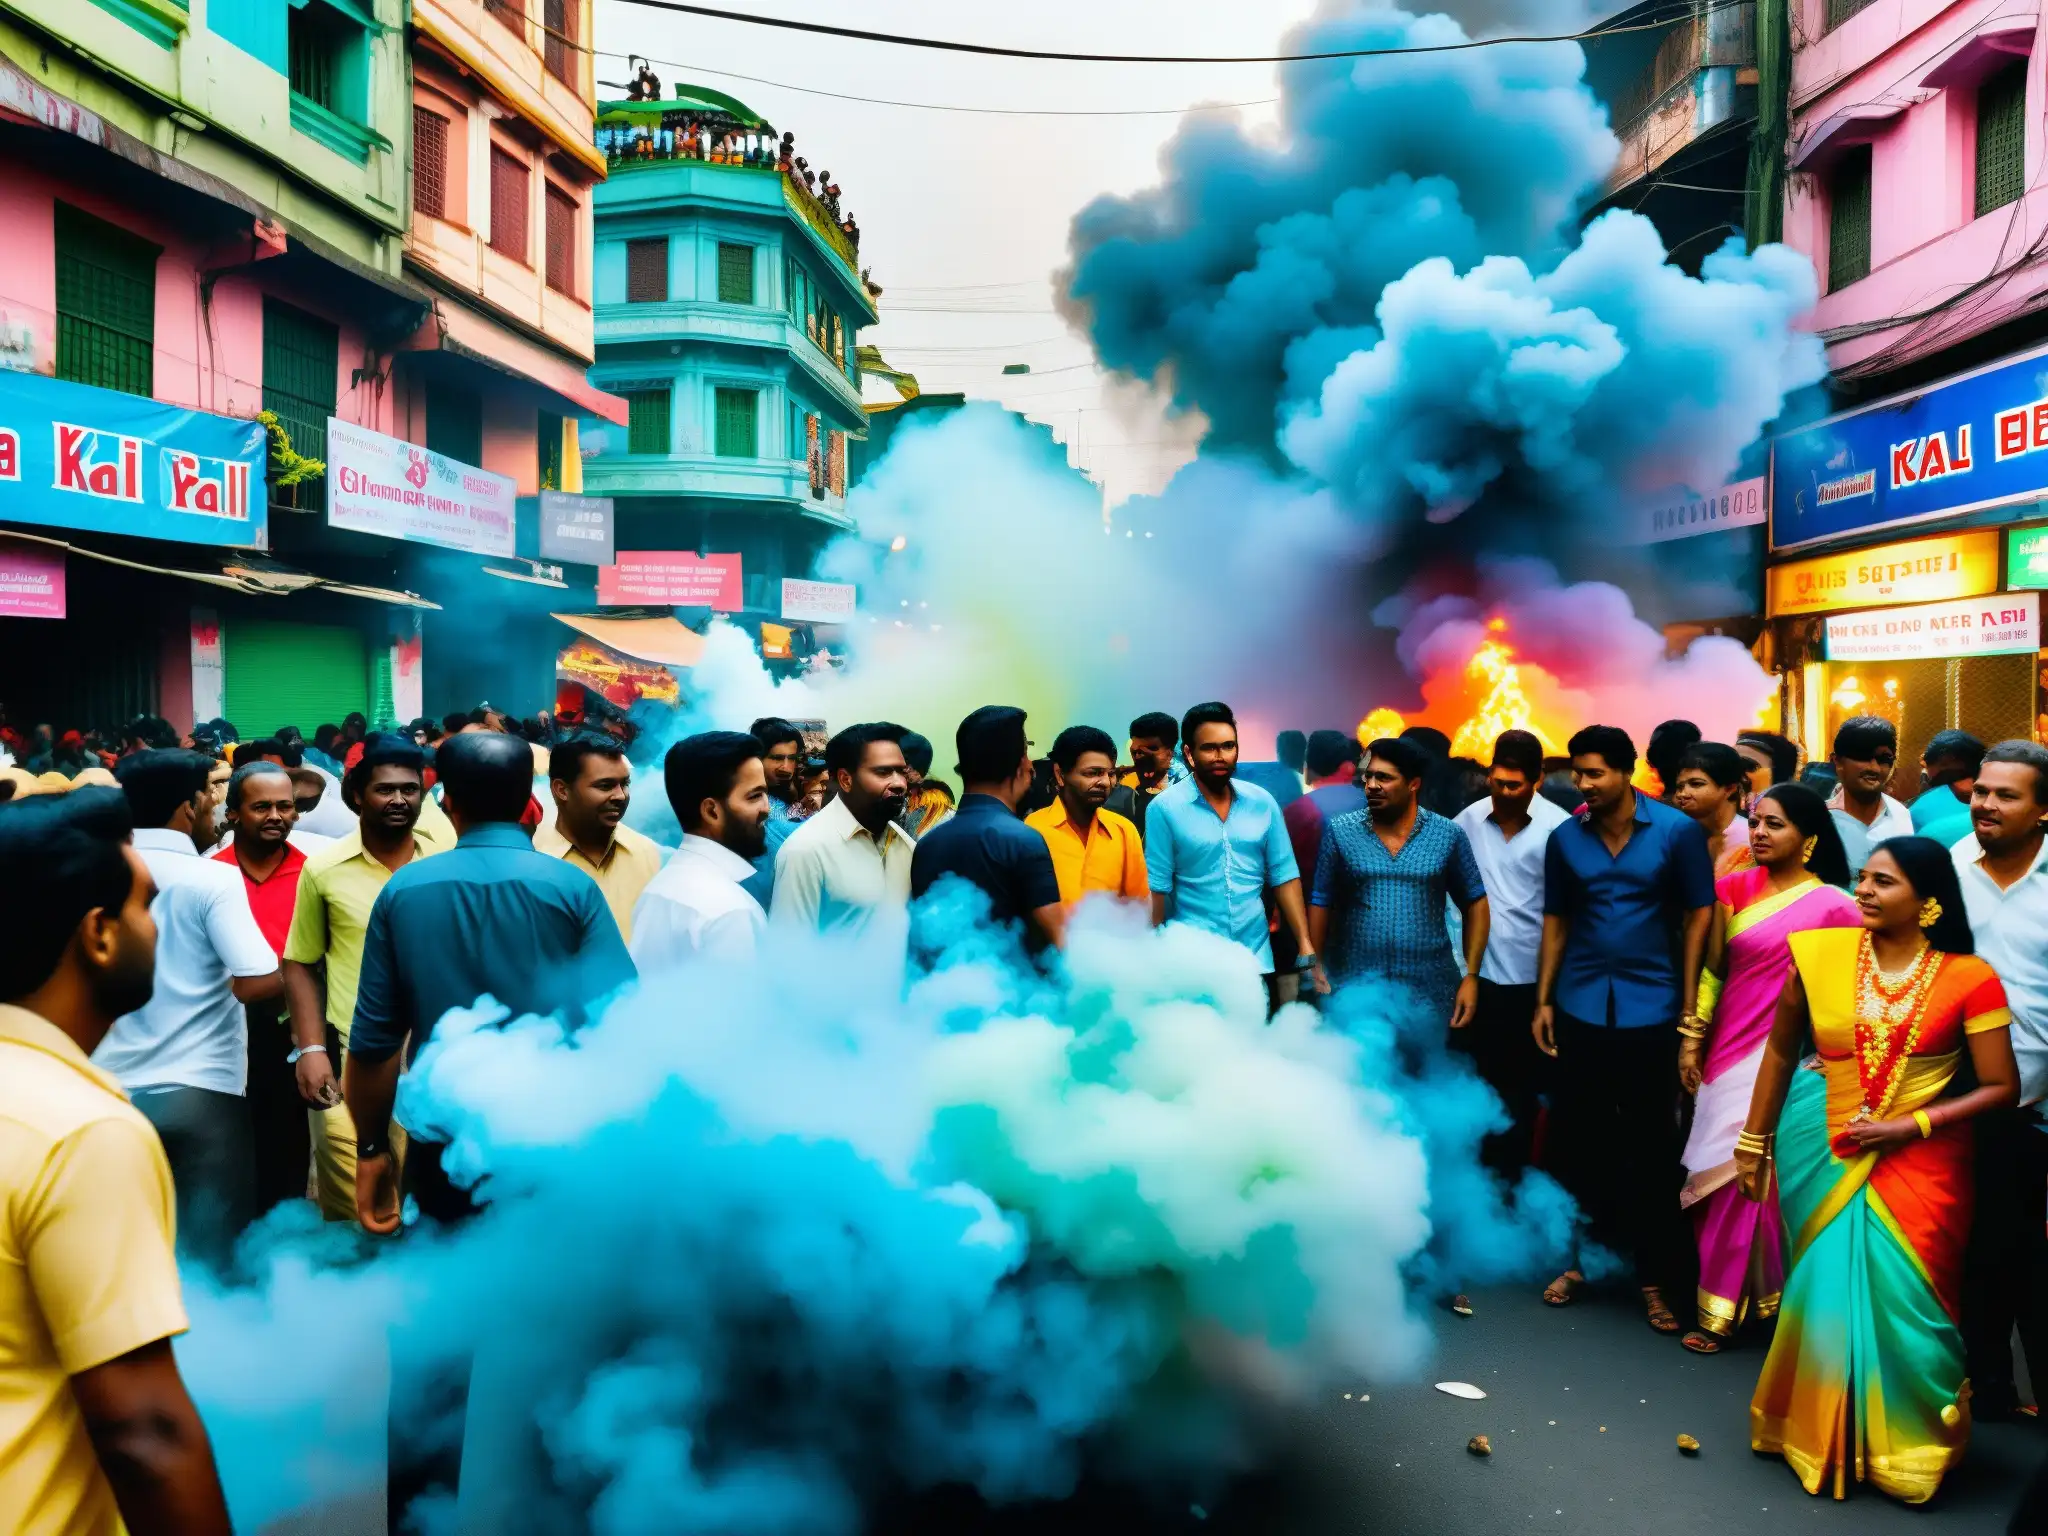 Calle vibrante y caótica de Calcuta durante el culto a la diosa Kali, con devotos, música y estatuas coloridas